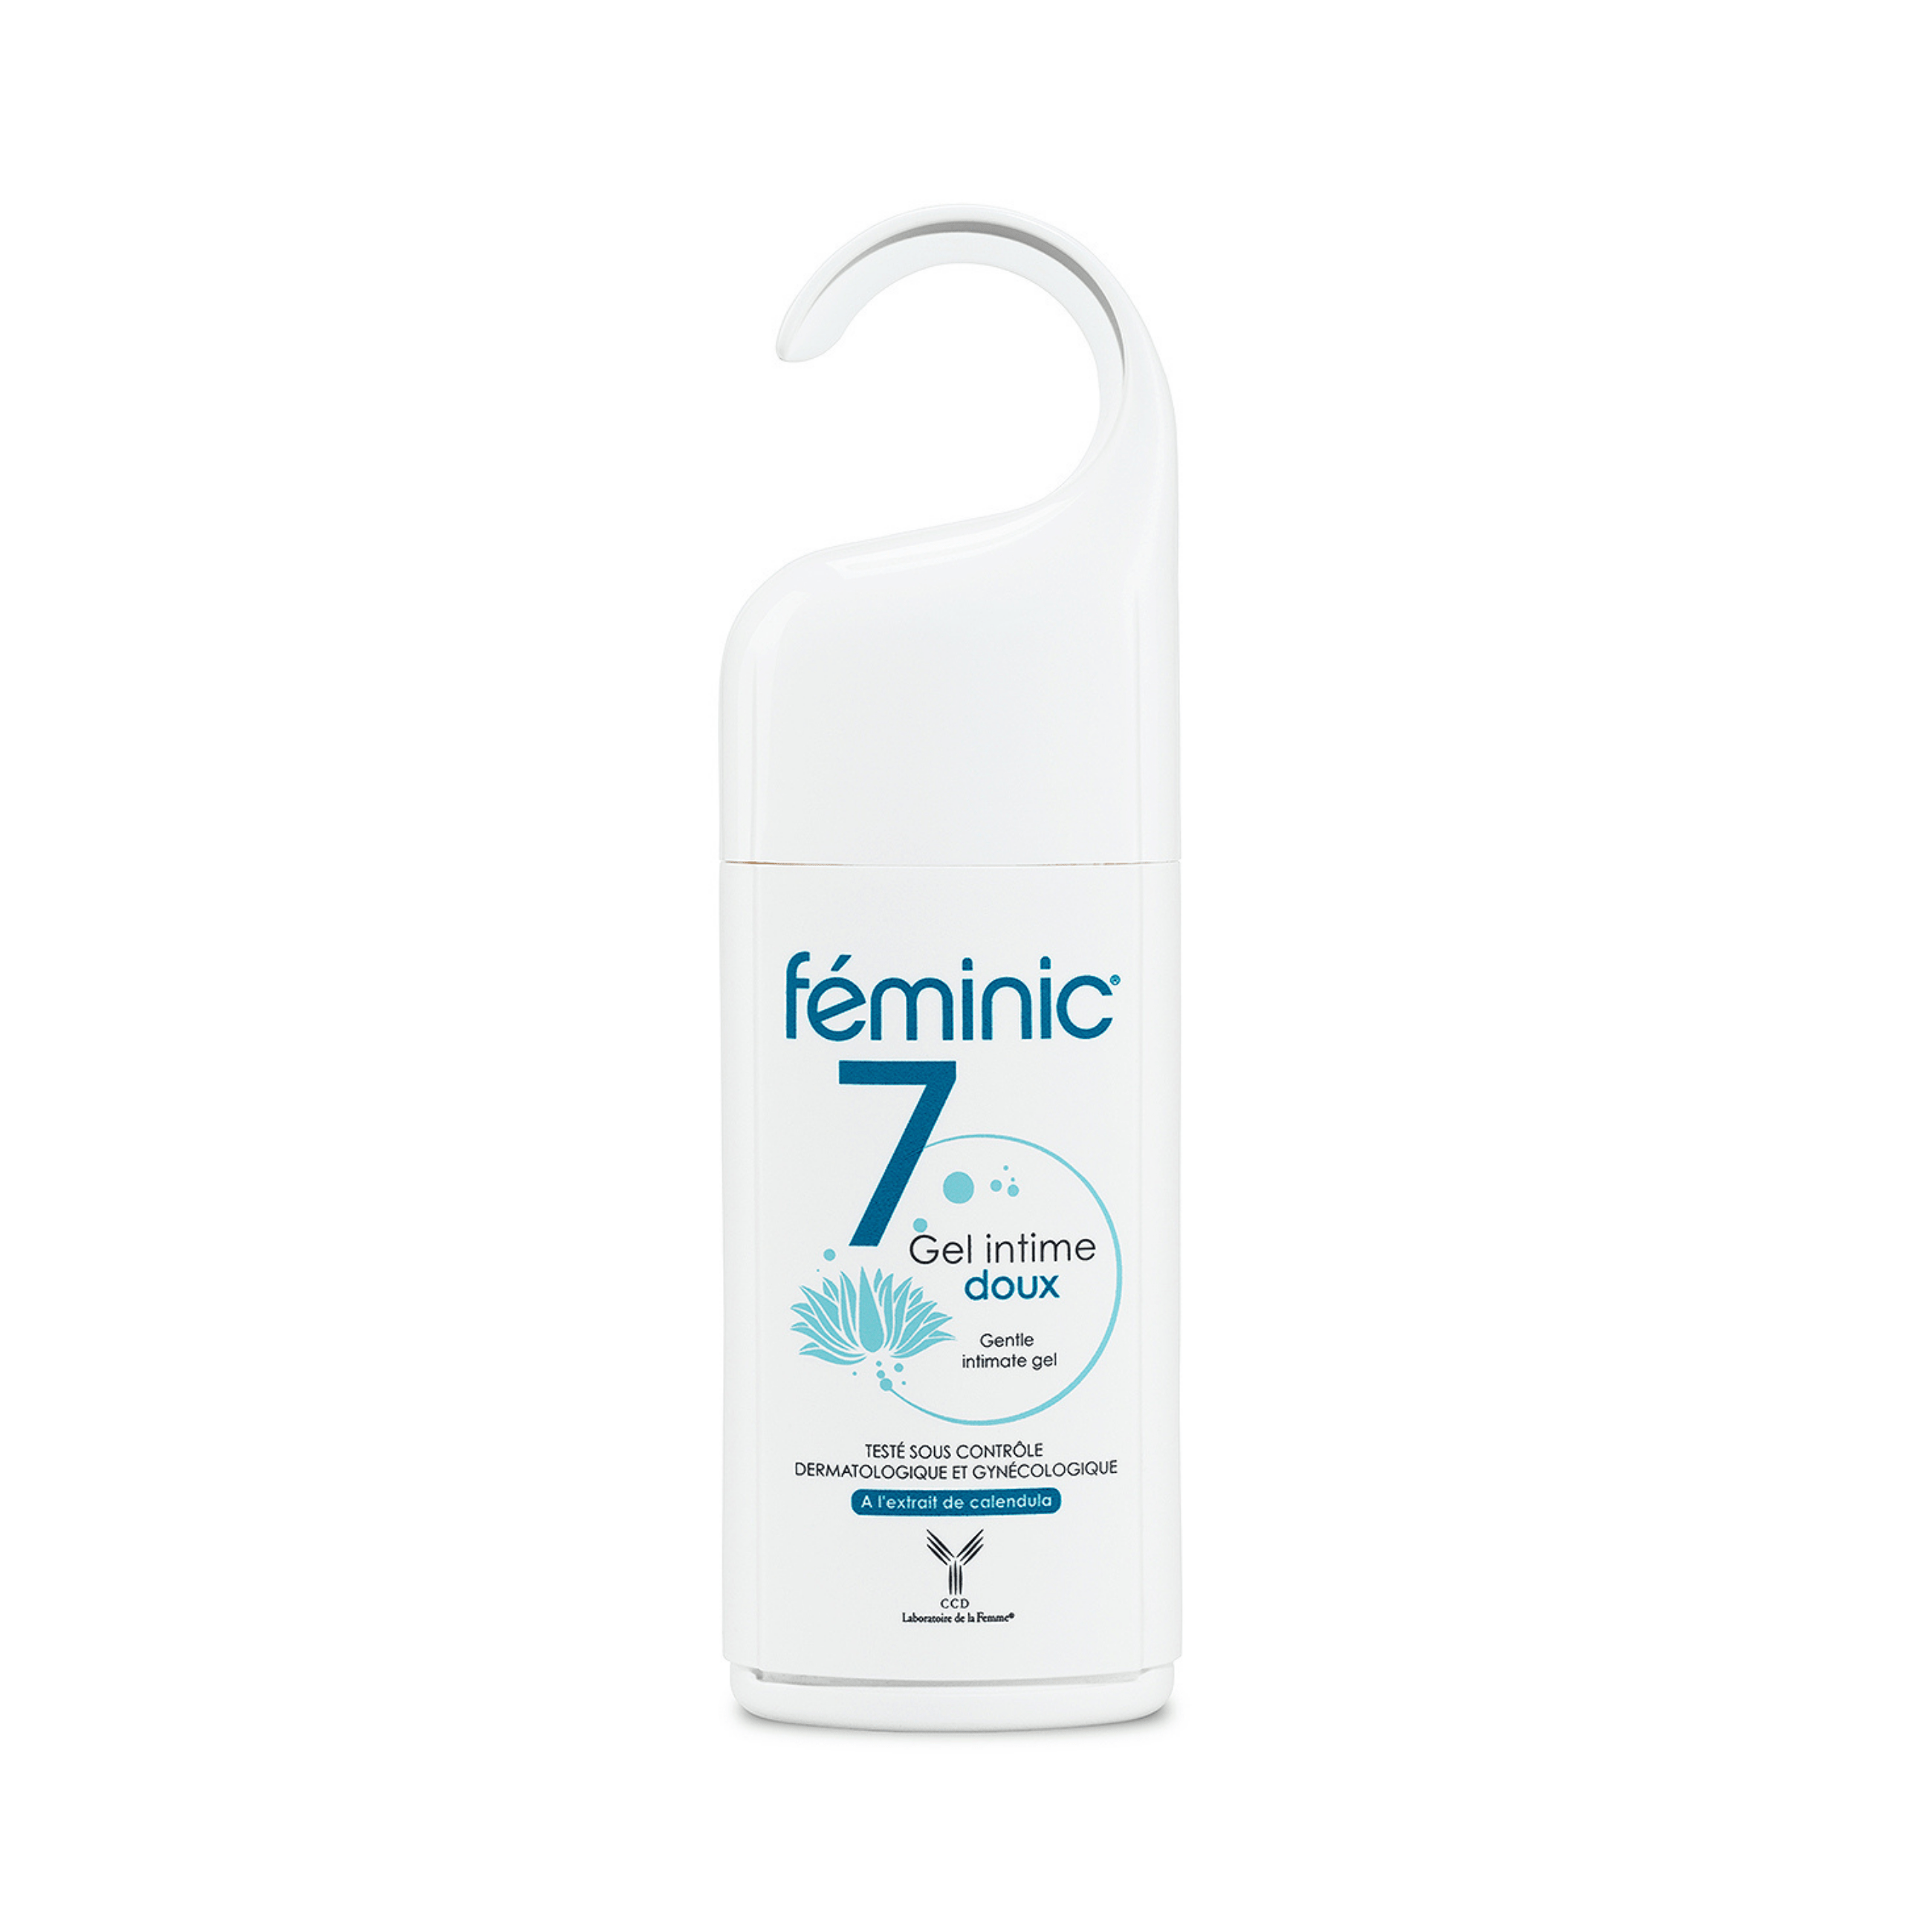 Feminic® 7 - Toilette intime - Laboratoire CCD